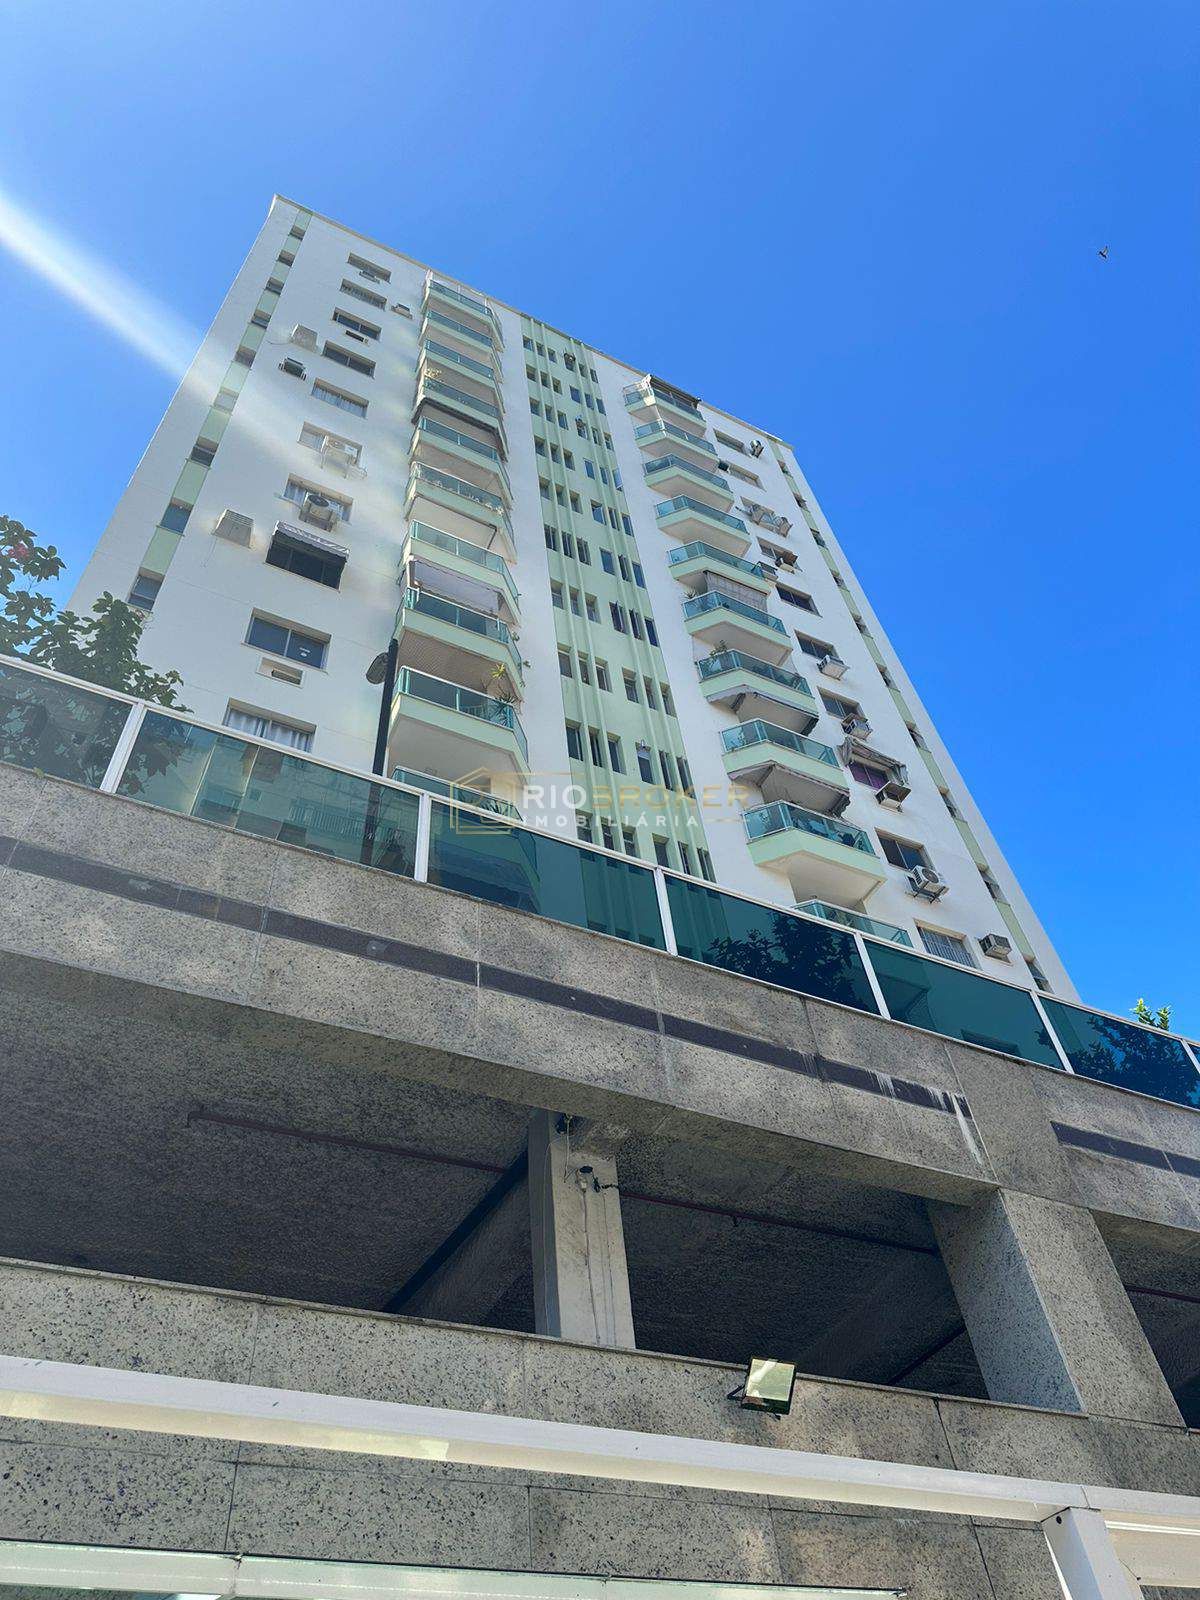 Apartamento de 2 quartos à venda - Jacarepaguá - Condomínio Promenade Gemiano